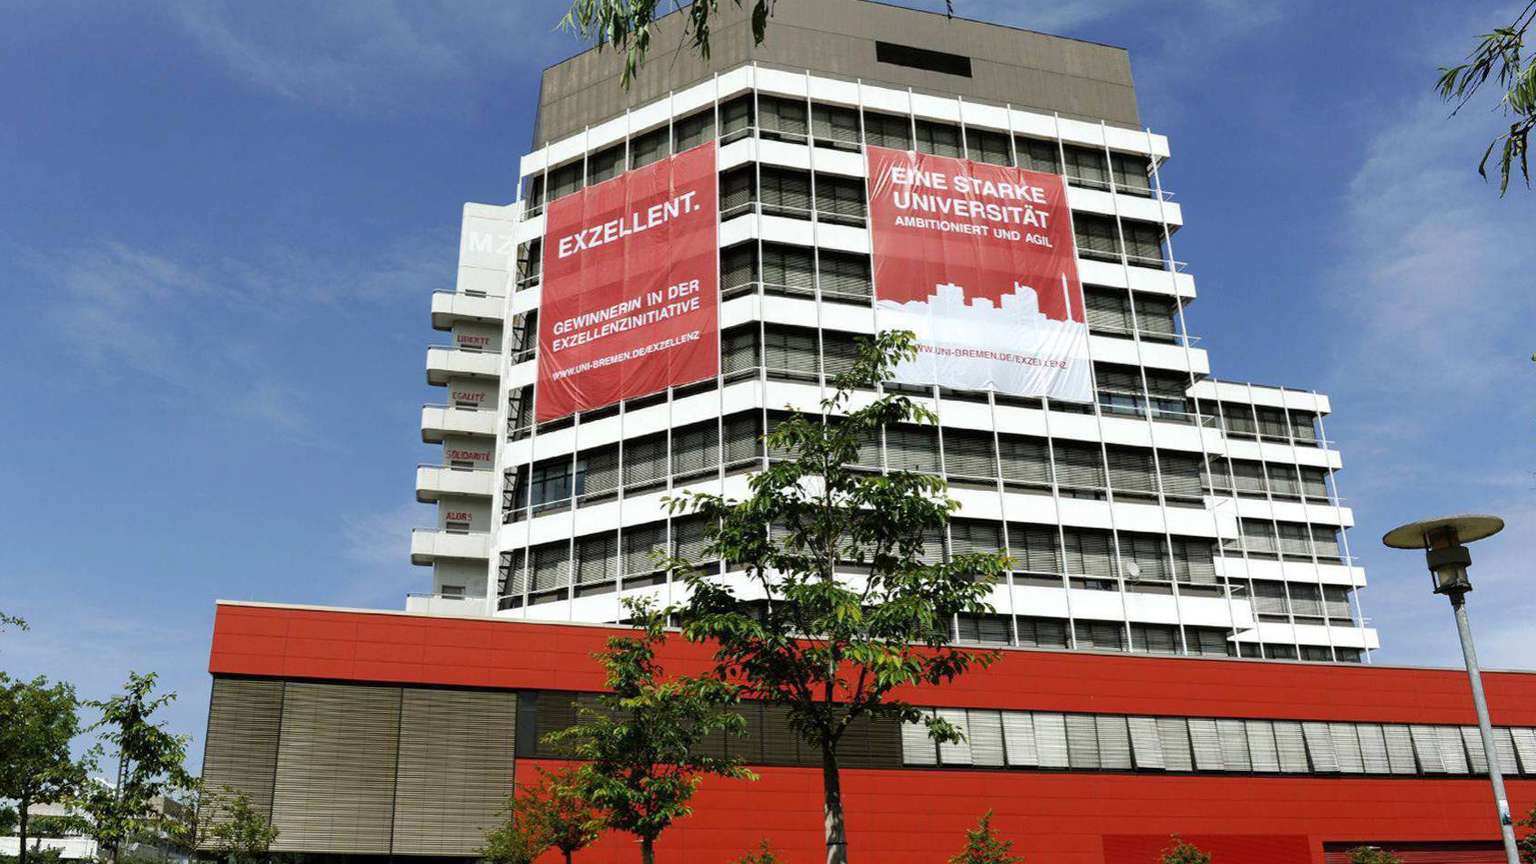 Das Gebäude MZH mit zwei großen roten Bannern. Sie tragen die Aufschrift: Exzellent. Gewinnerin der Exzellenzinitiative. Und: Eine starke Universität.